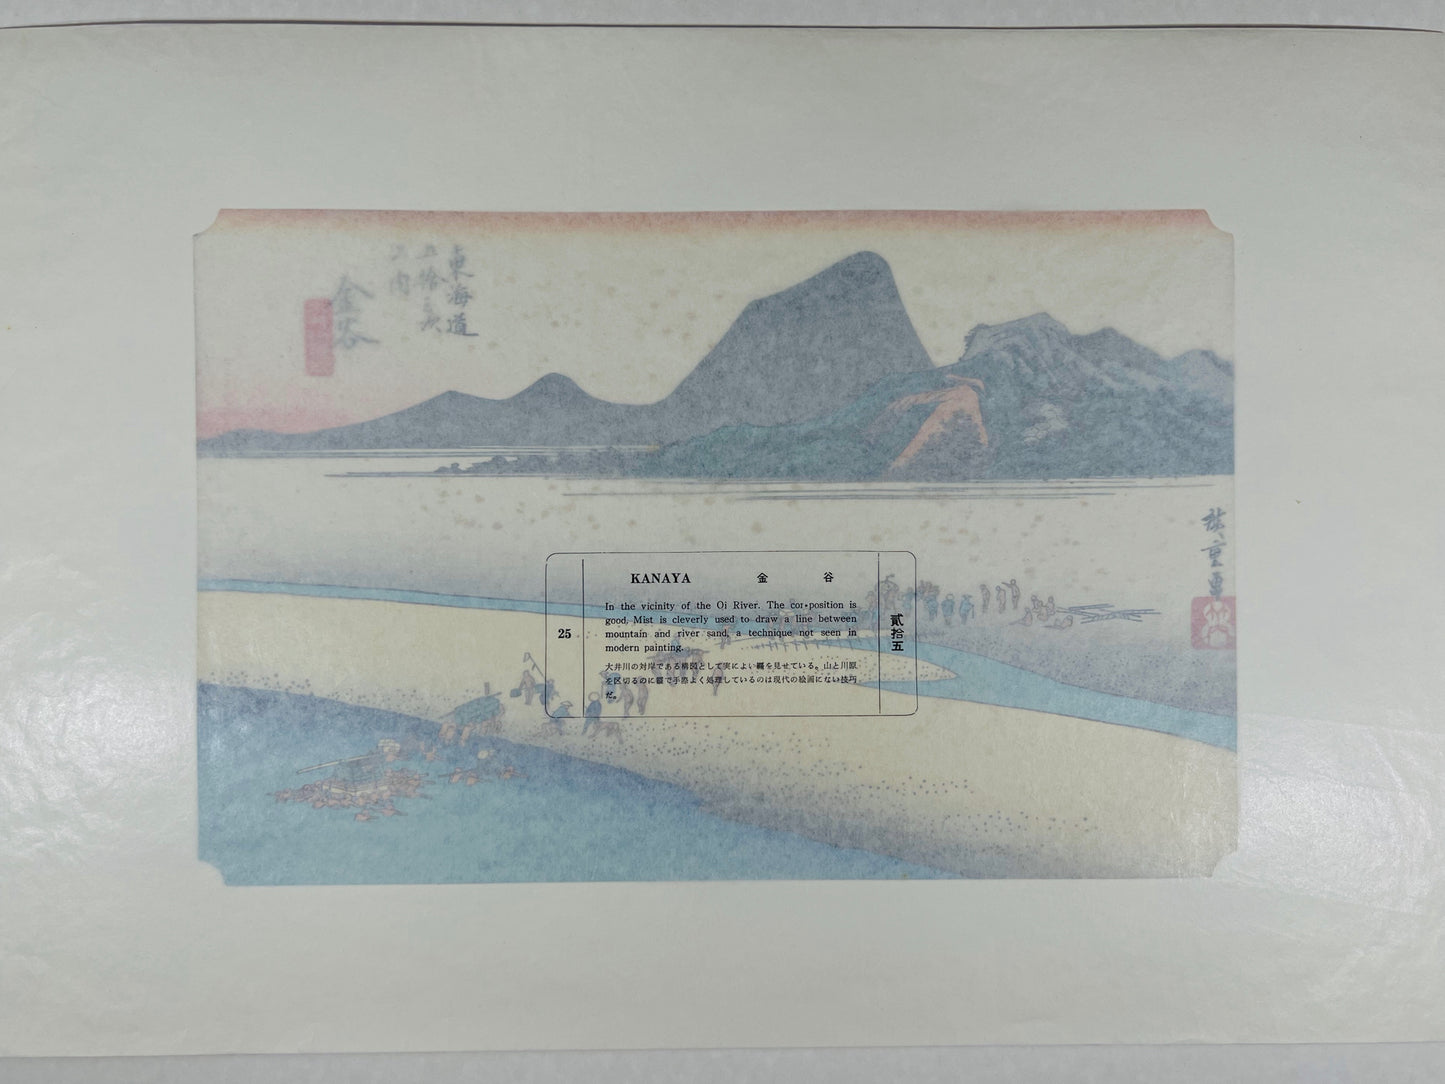 estampe japonaise de Hiroshige, des voyageurs traversent la rivière à gué à l'aide de porteurs, le texte sur papier cristal